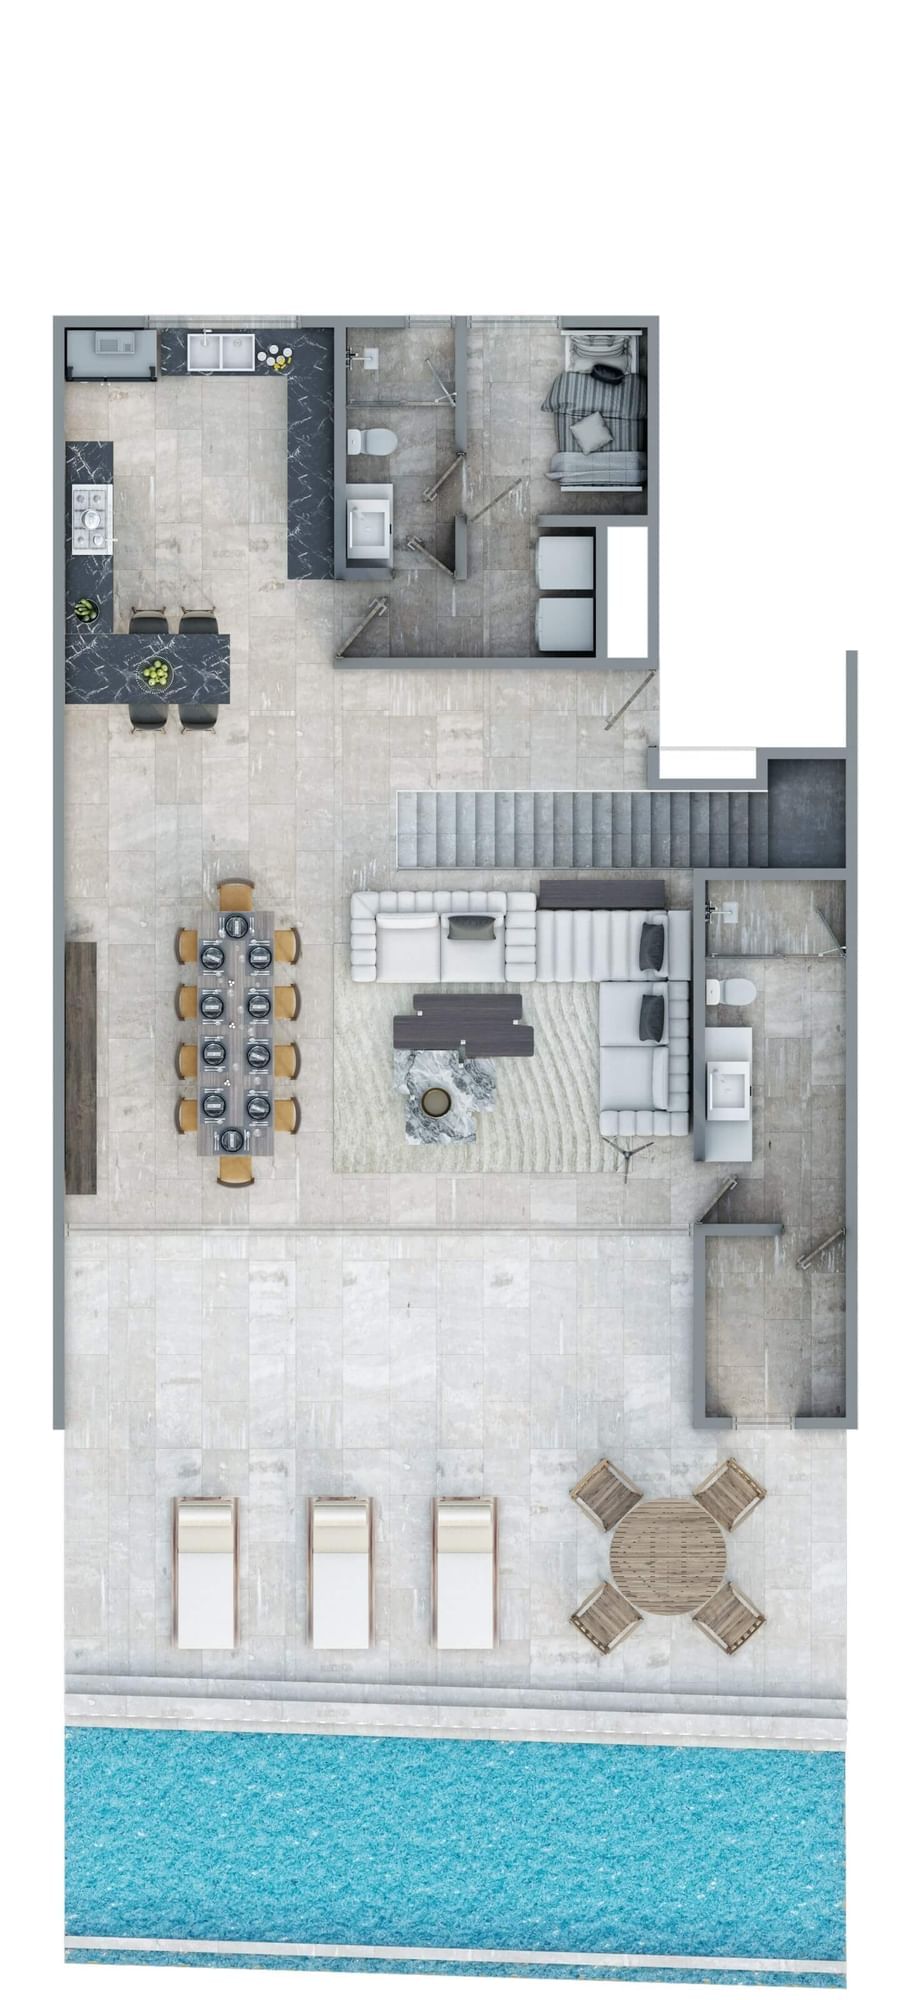 Diseño conceptual del plano de planta Penthouse en Live Aqua Resorts